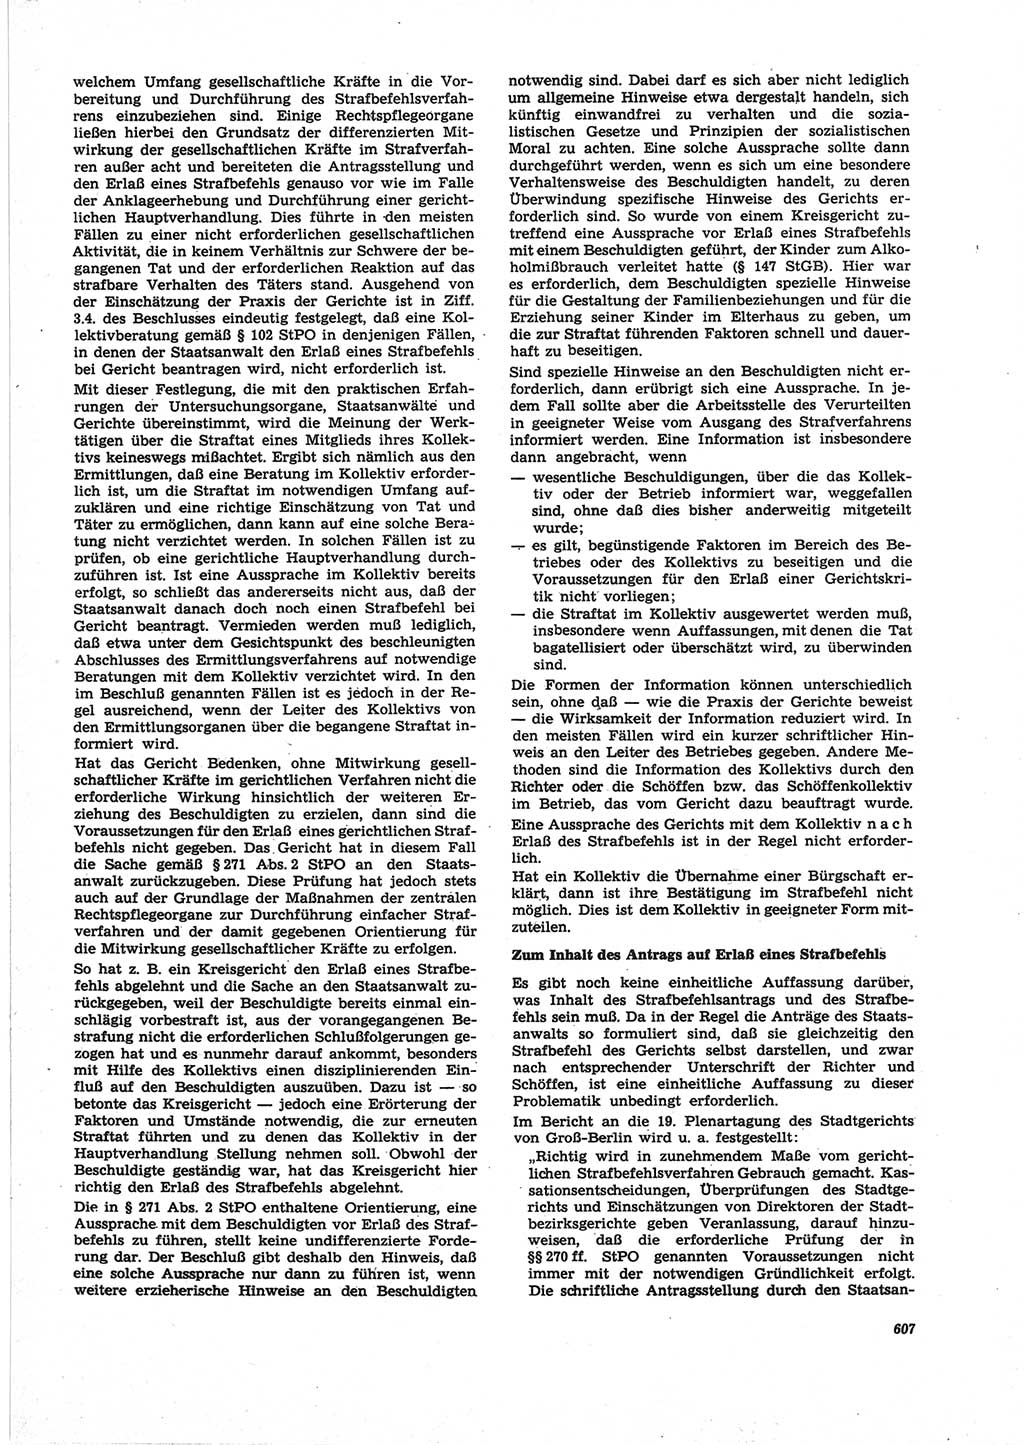 Neue Justiz (NJ), Zeitschrift für Recht und Rechtswissenschaft [Deutsche Demokratische Republik (DDR)], 25. Jahrgang 1971, Seite 607 (NJ DDR 1971, S. 607)